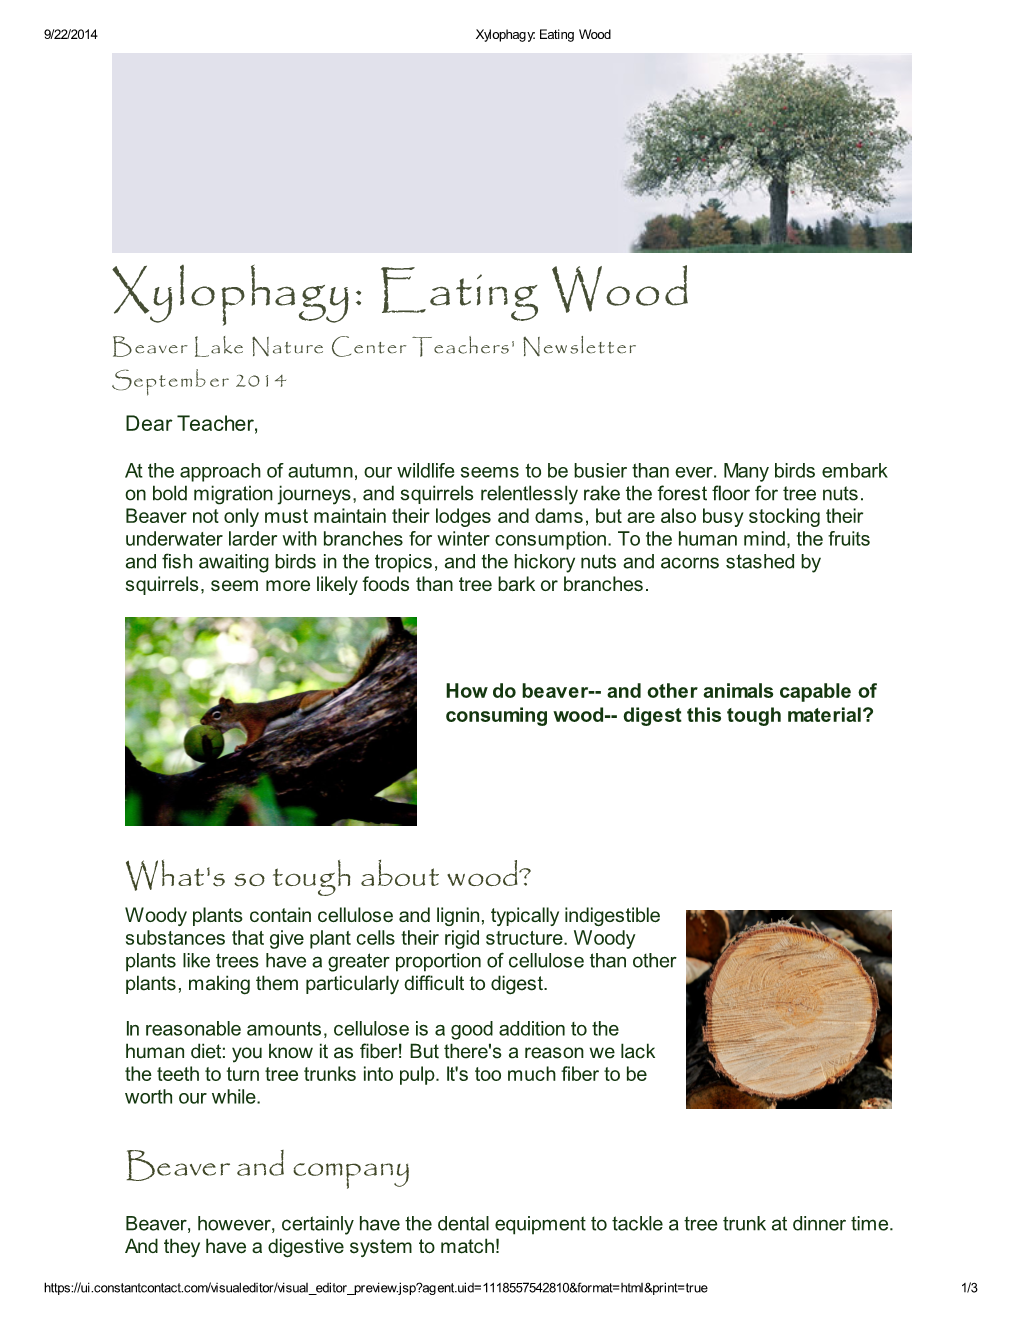 Xylophagy: Eating Wood